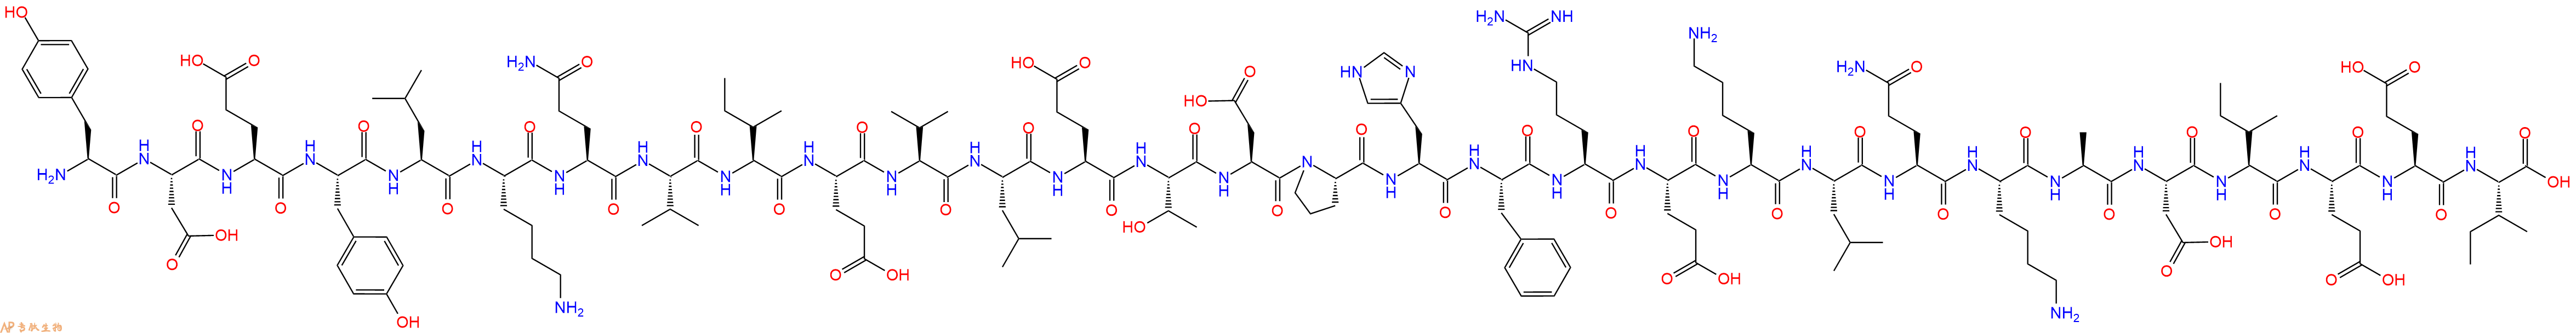 专肽生物产品Nesfatin蛋白片段 Nesfatin-1 (30-59) (mouse, rat)1872441-22-9